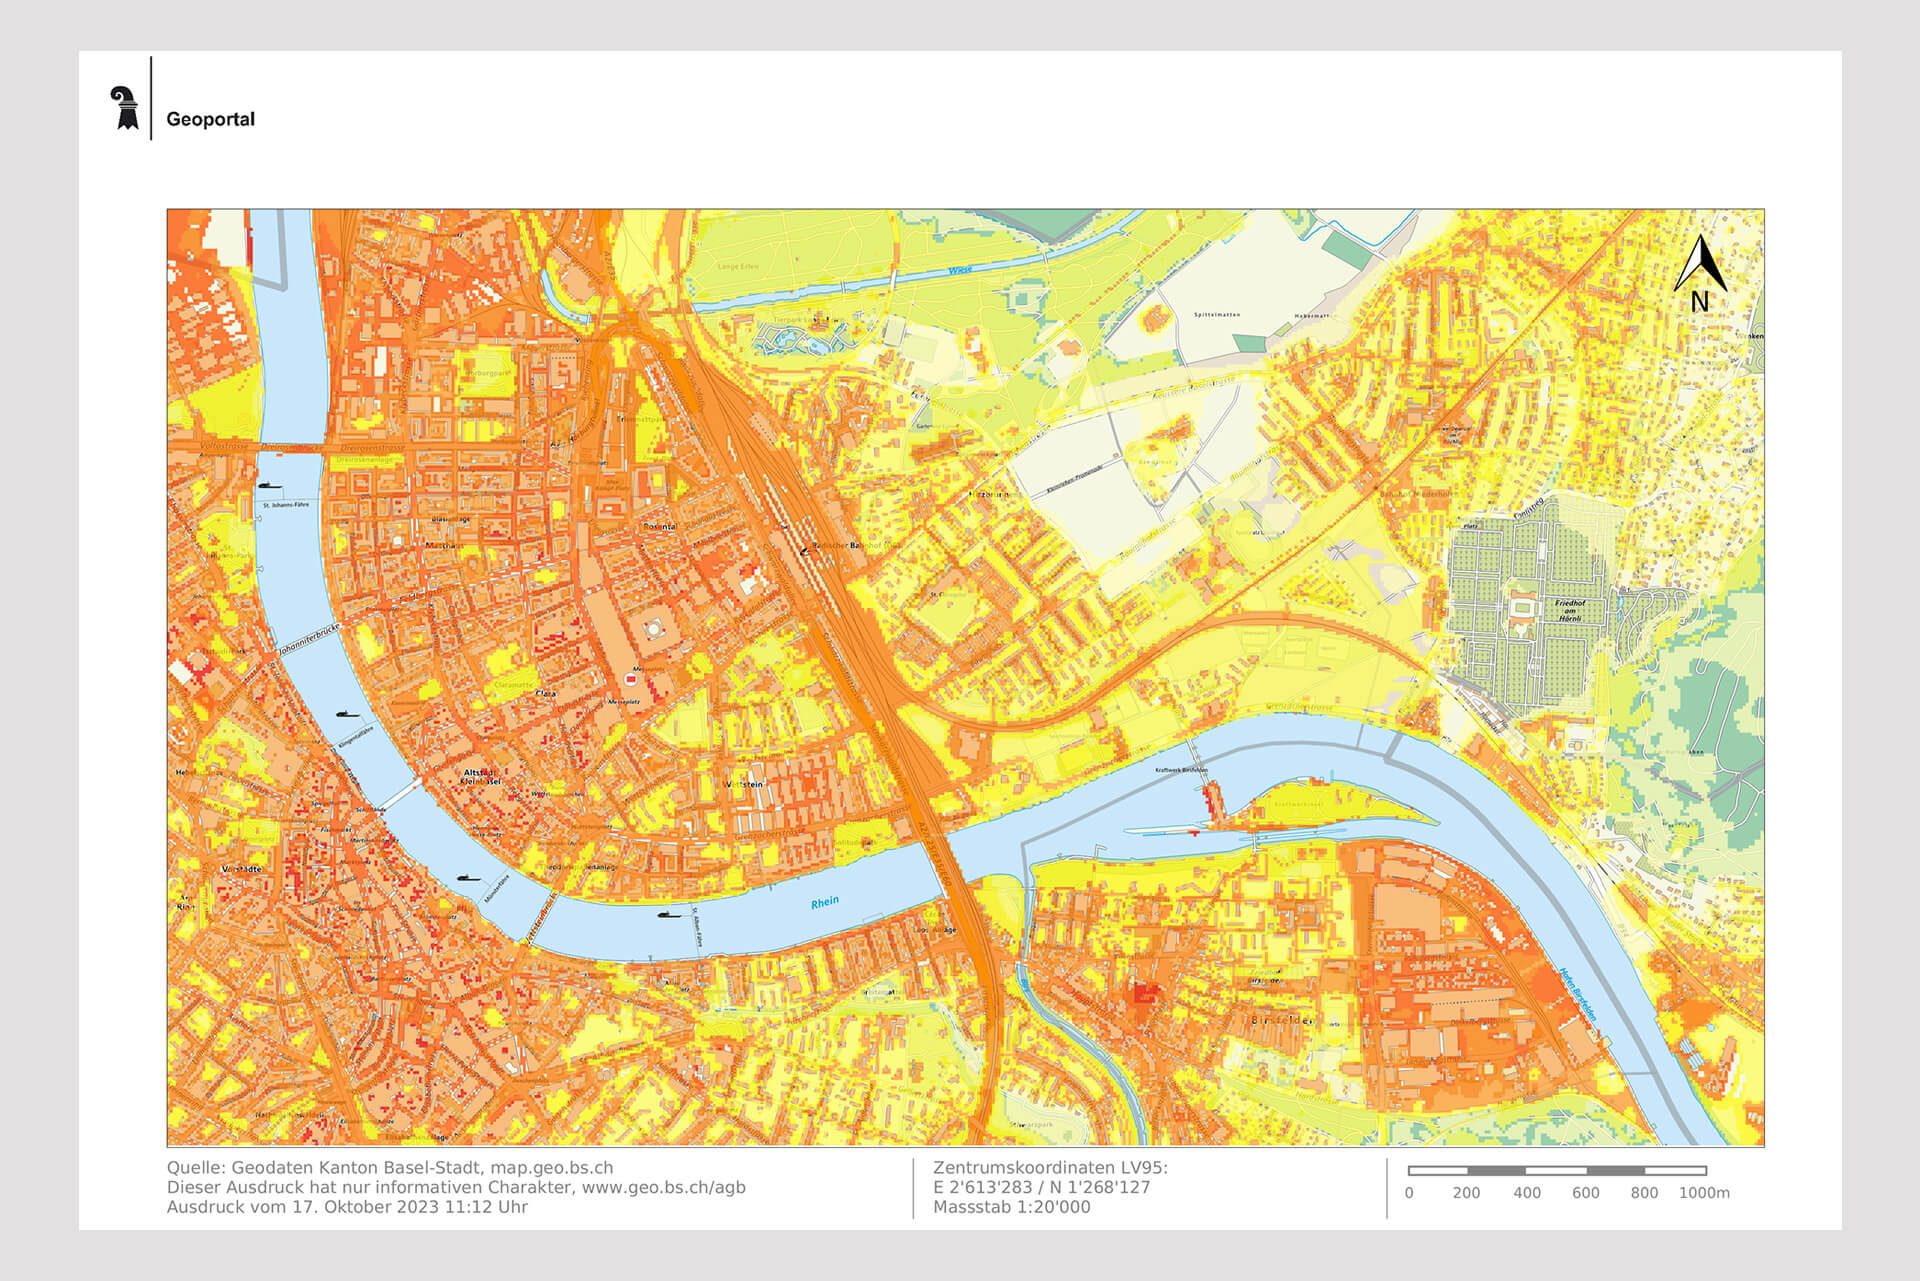 Karte von Basel-Stadt. Die Wärmeinseln sind orange eingezeichnet. Kühlere Gebiete sind gelb oder grün markiert.